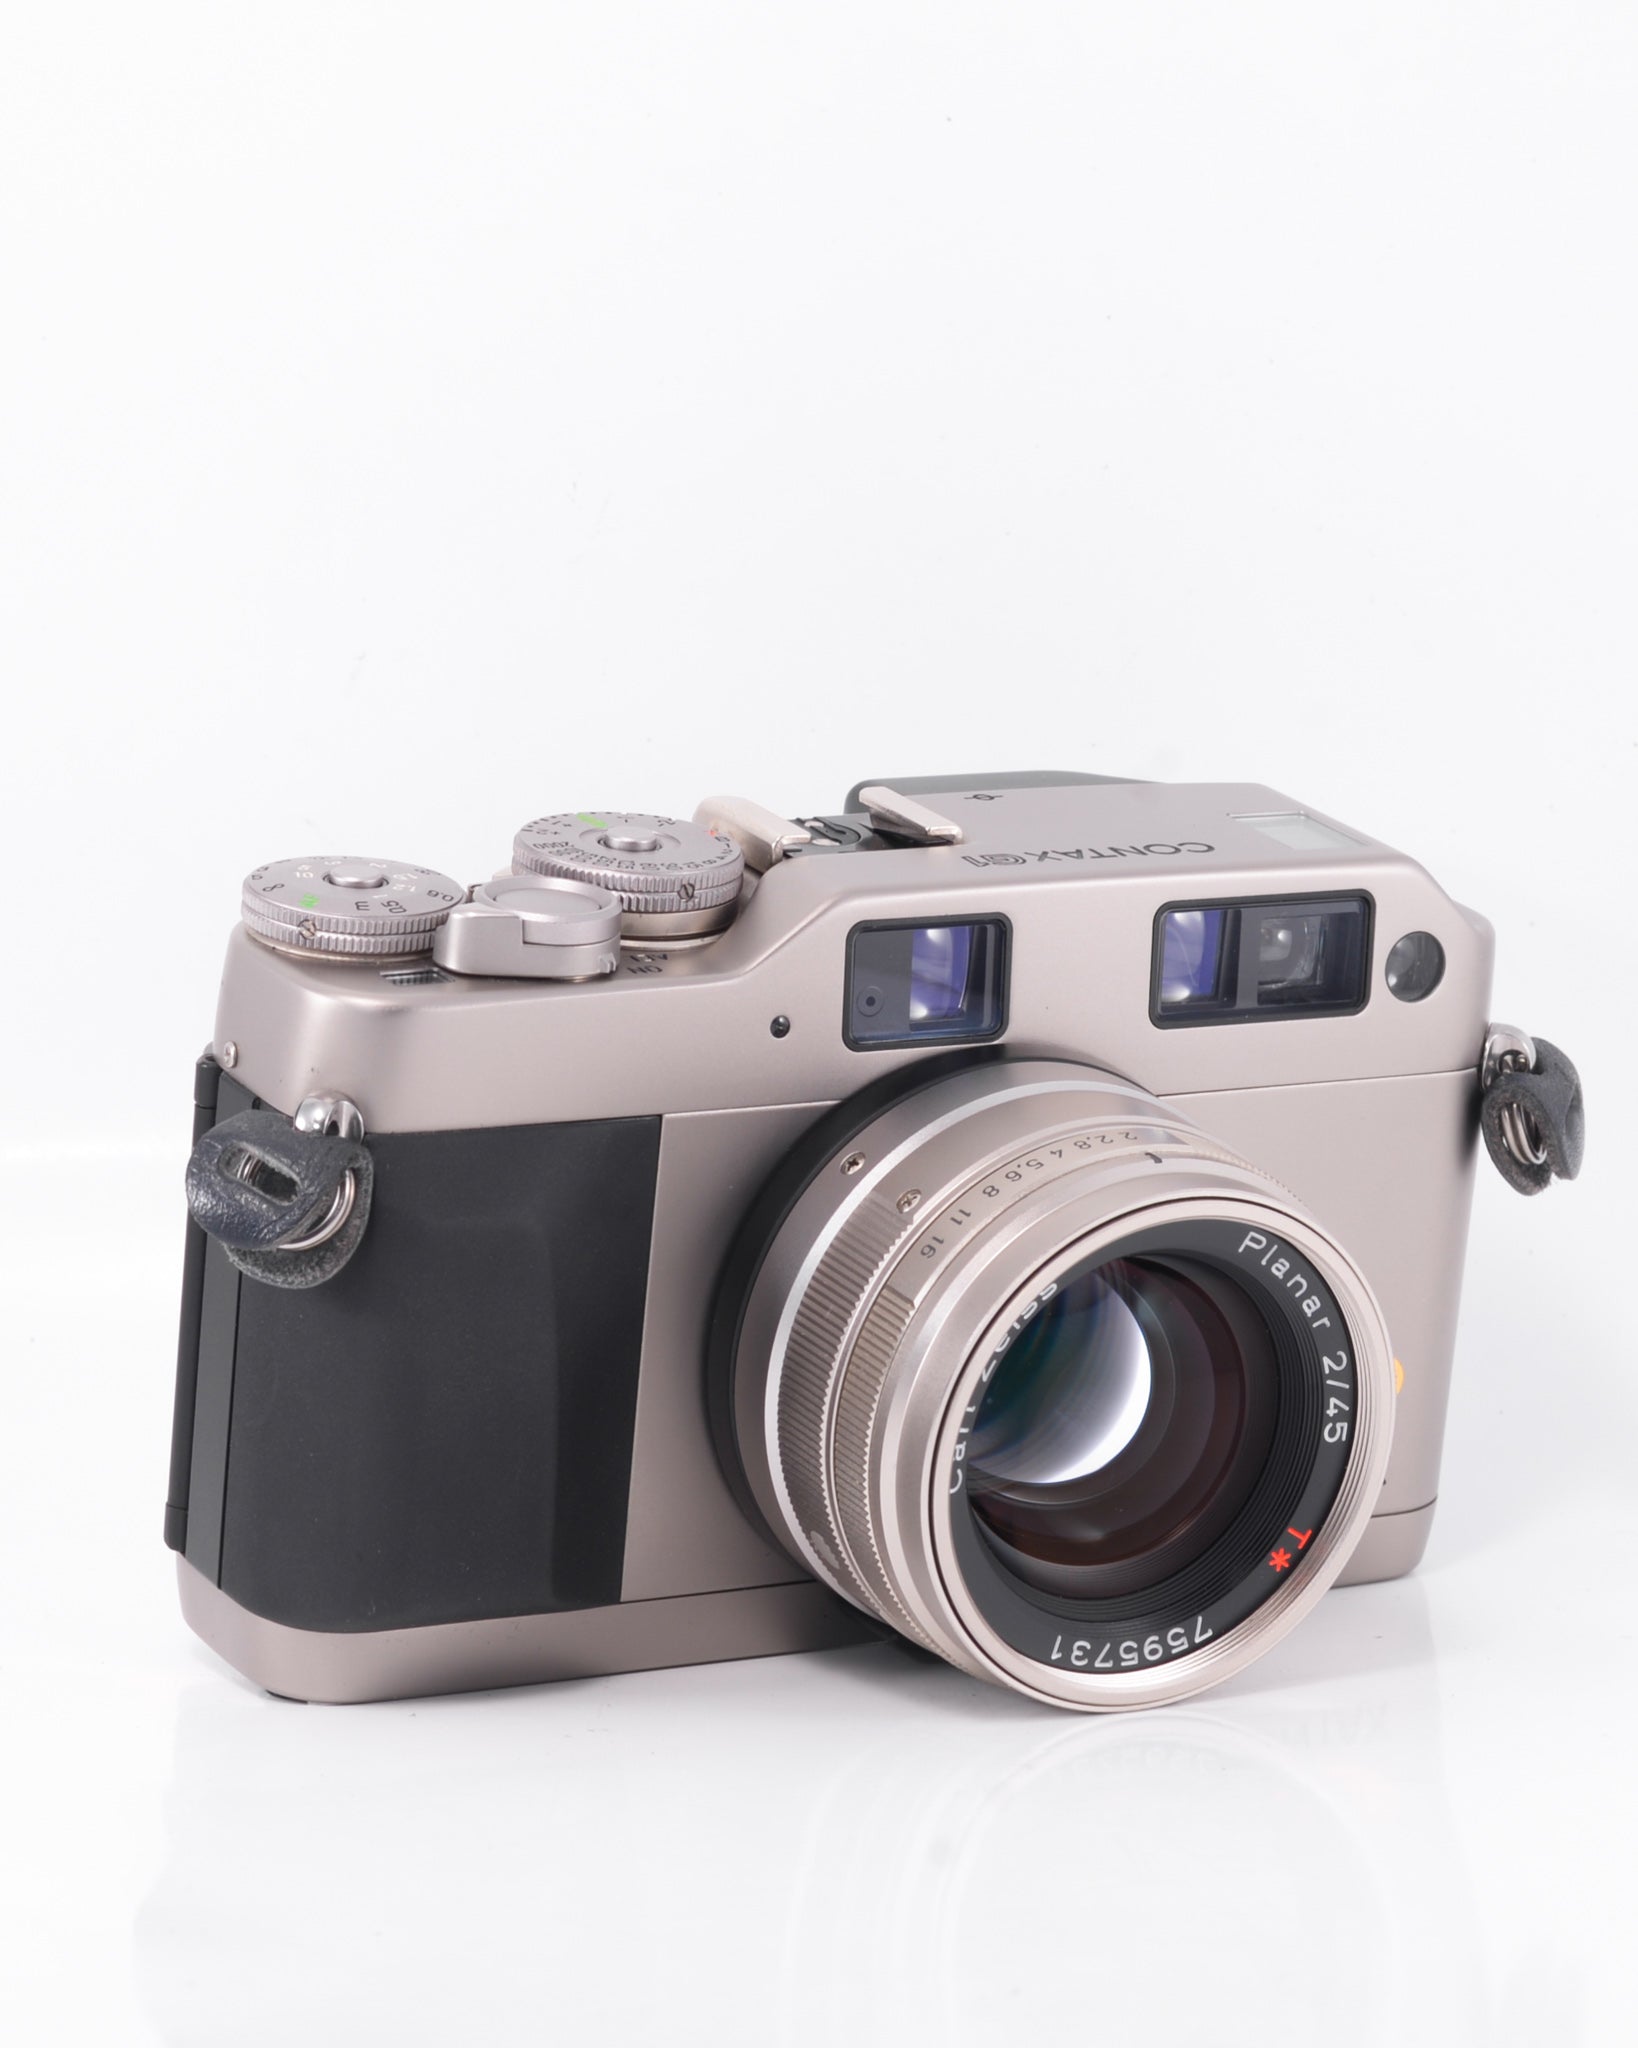 Contax G1 35mm rangefinder film camera with 45mm f2 Zeiss Planar 